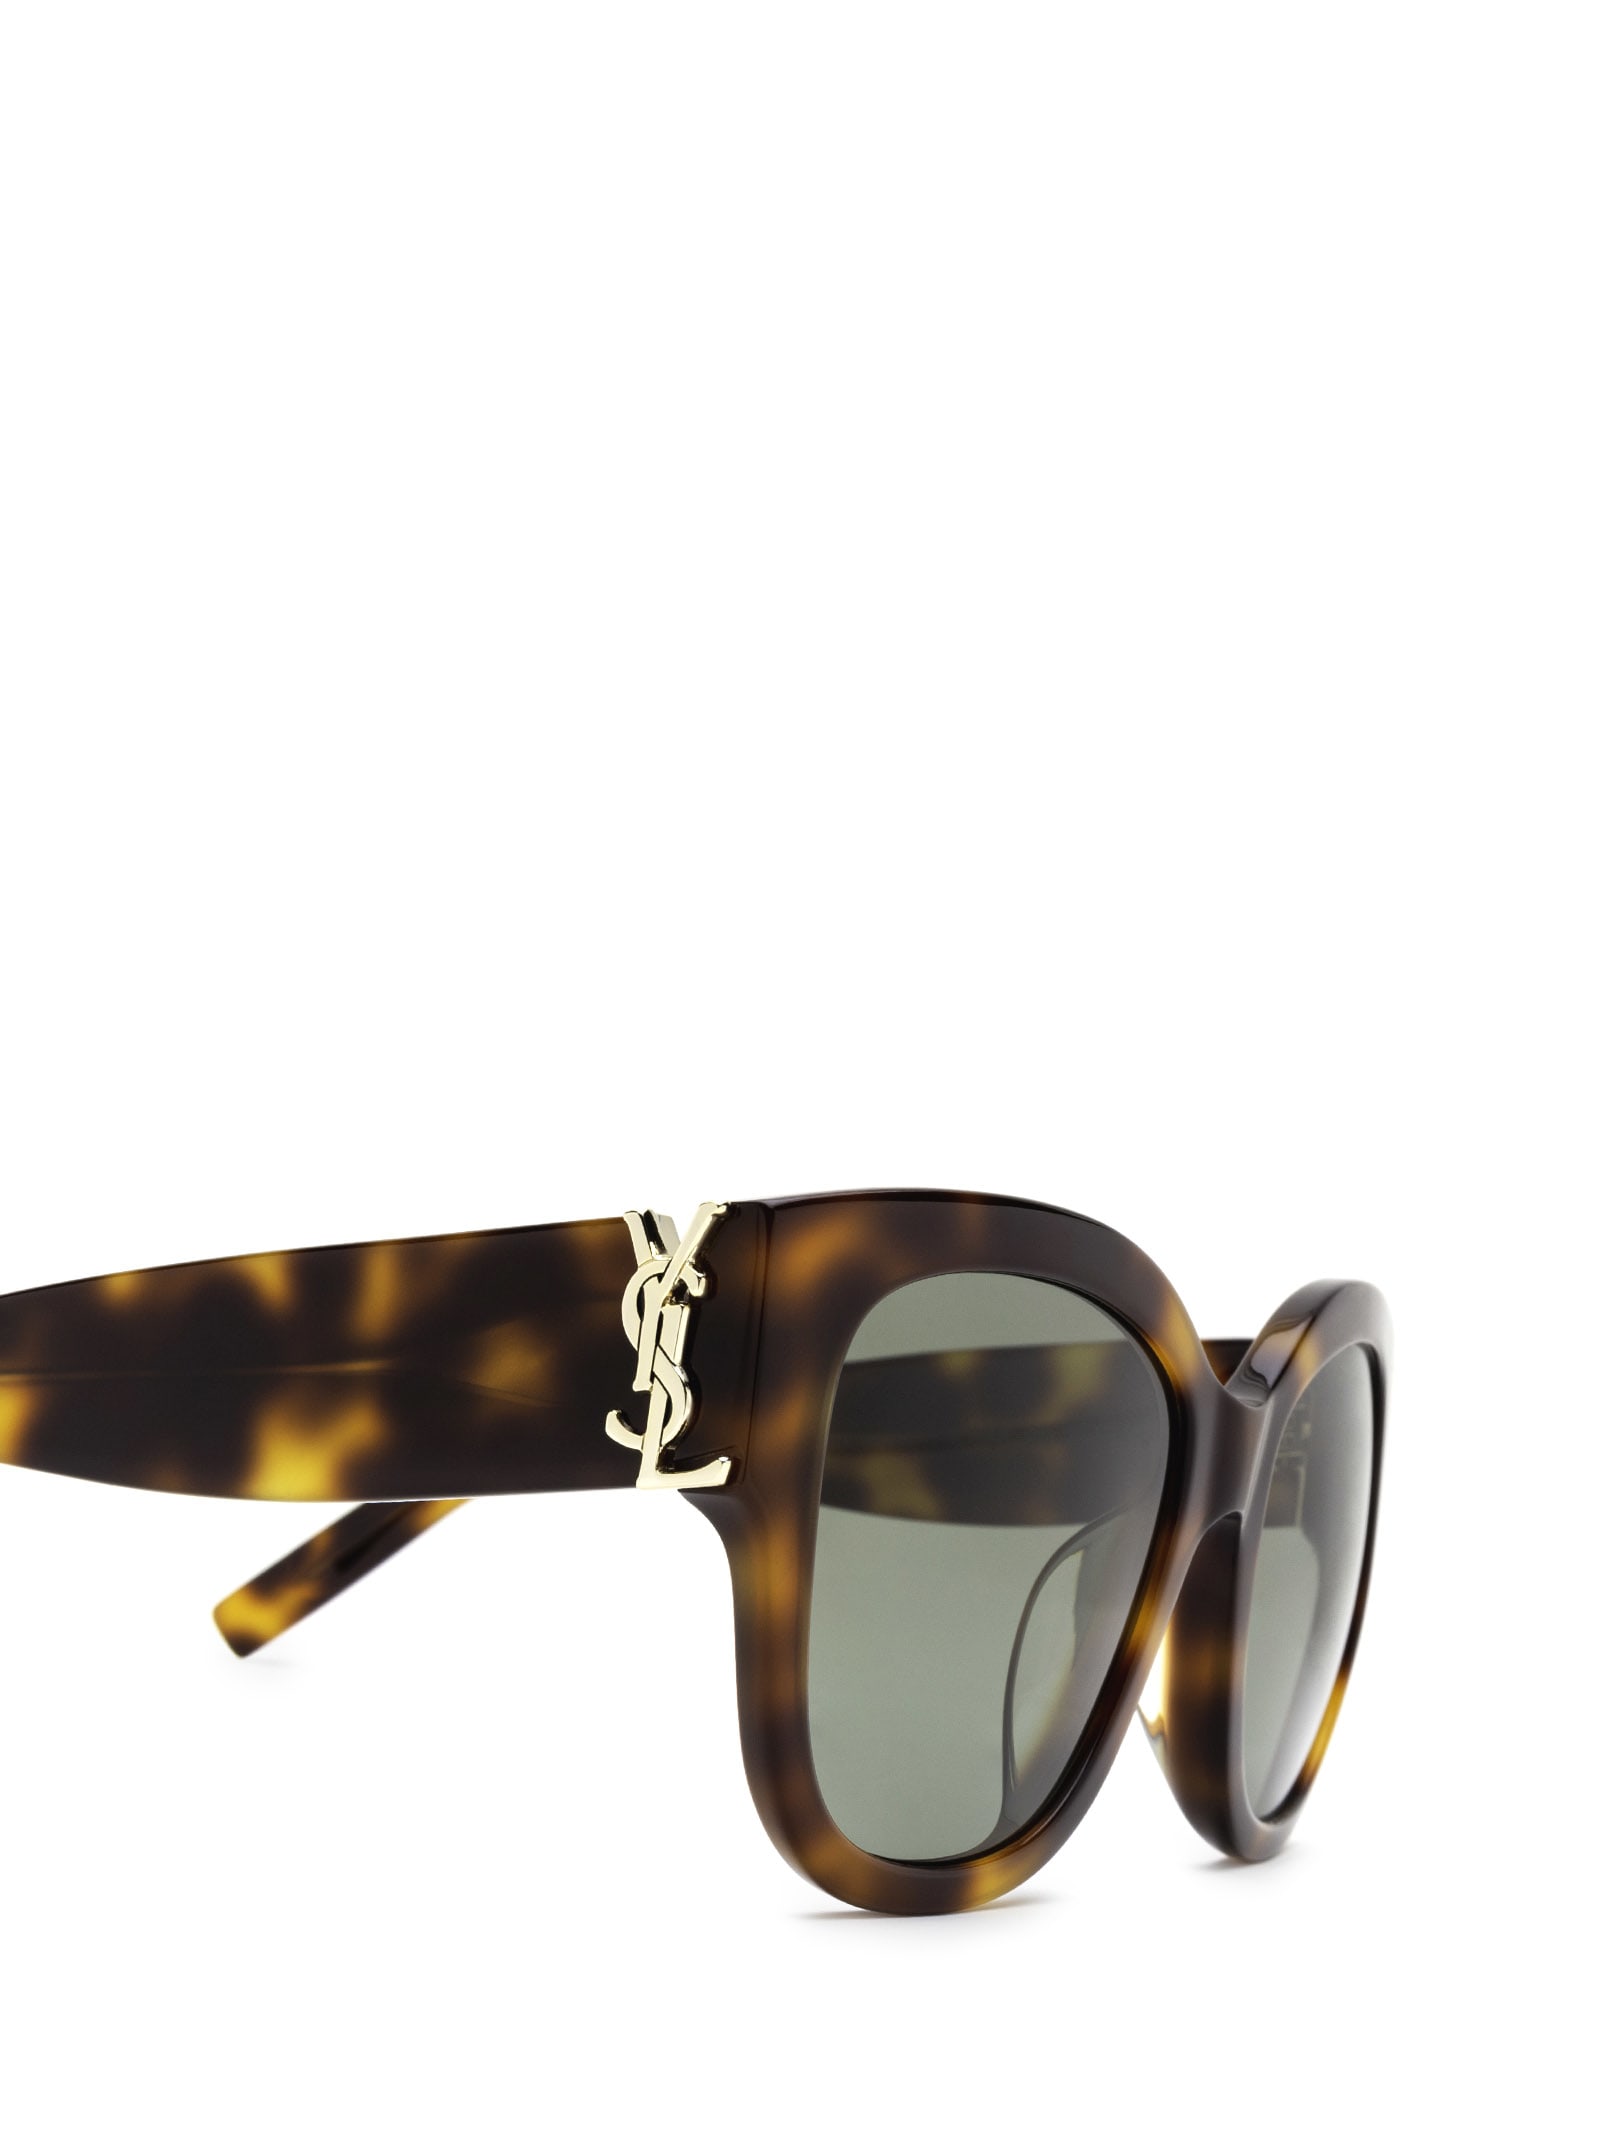 Saint Laurent Women's SL M95/F Cat Eye Sunglasses